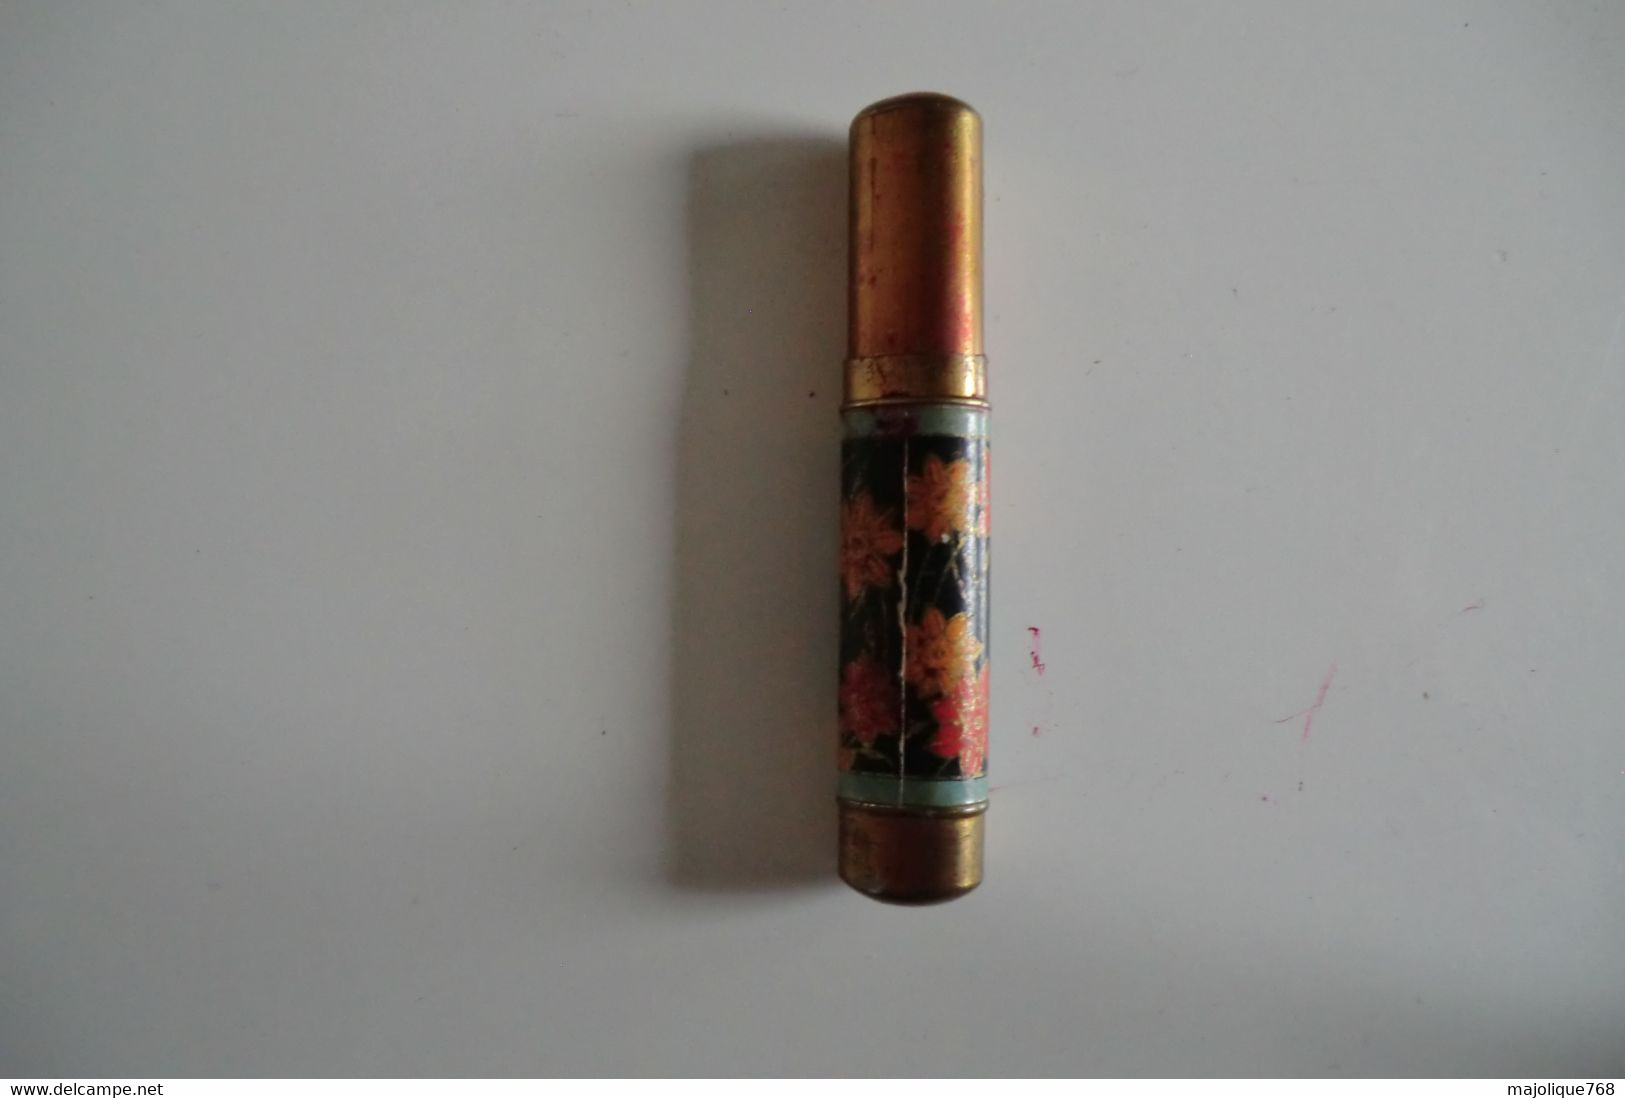 Ancien Tube De Rouge à Lèvre Parfumerie Chéramy, Raisin Carmin, Paris - Produits De Beauté